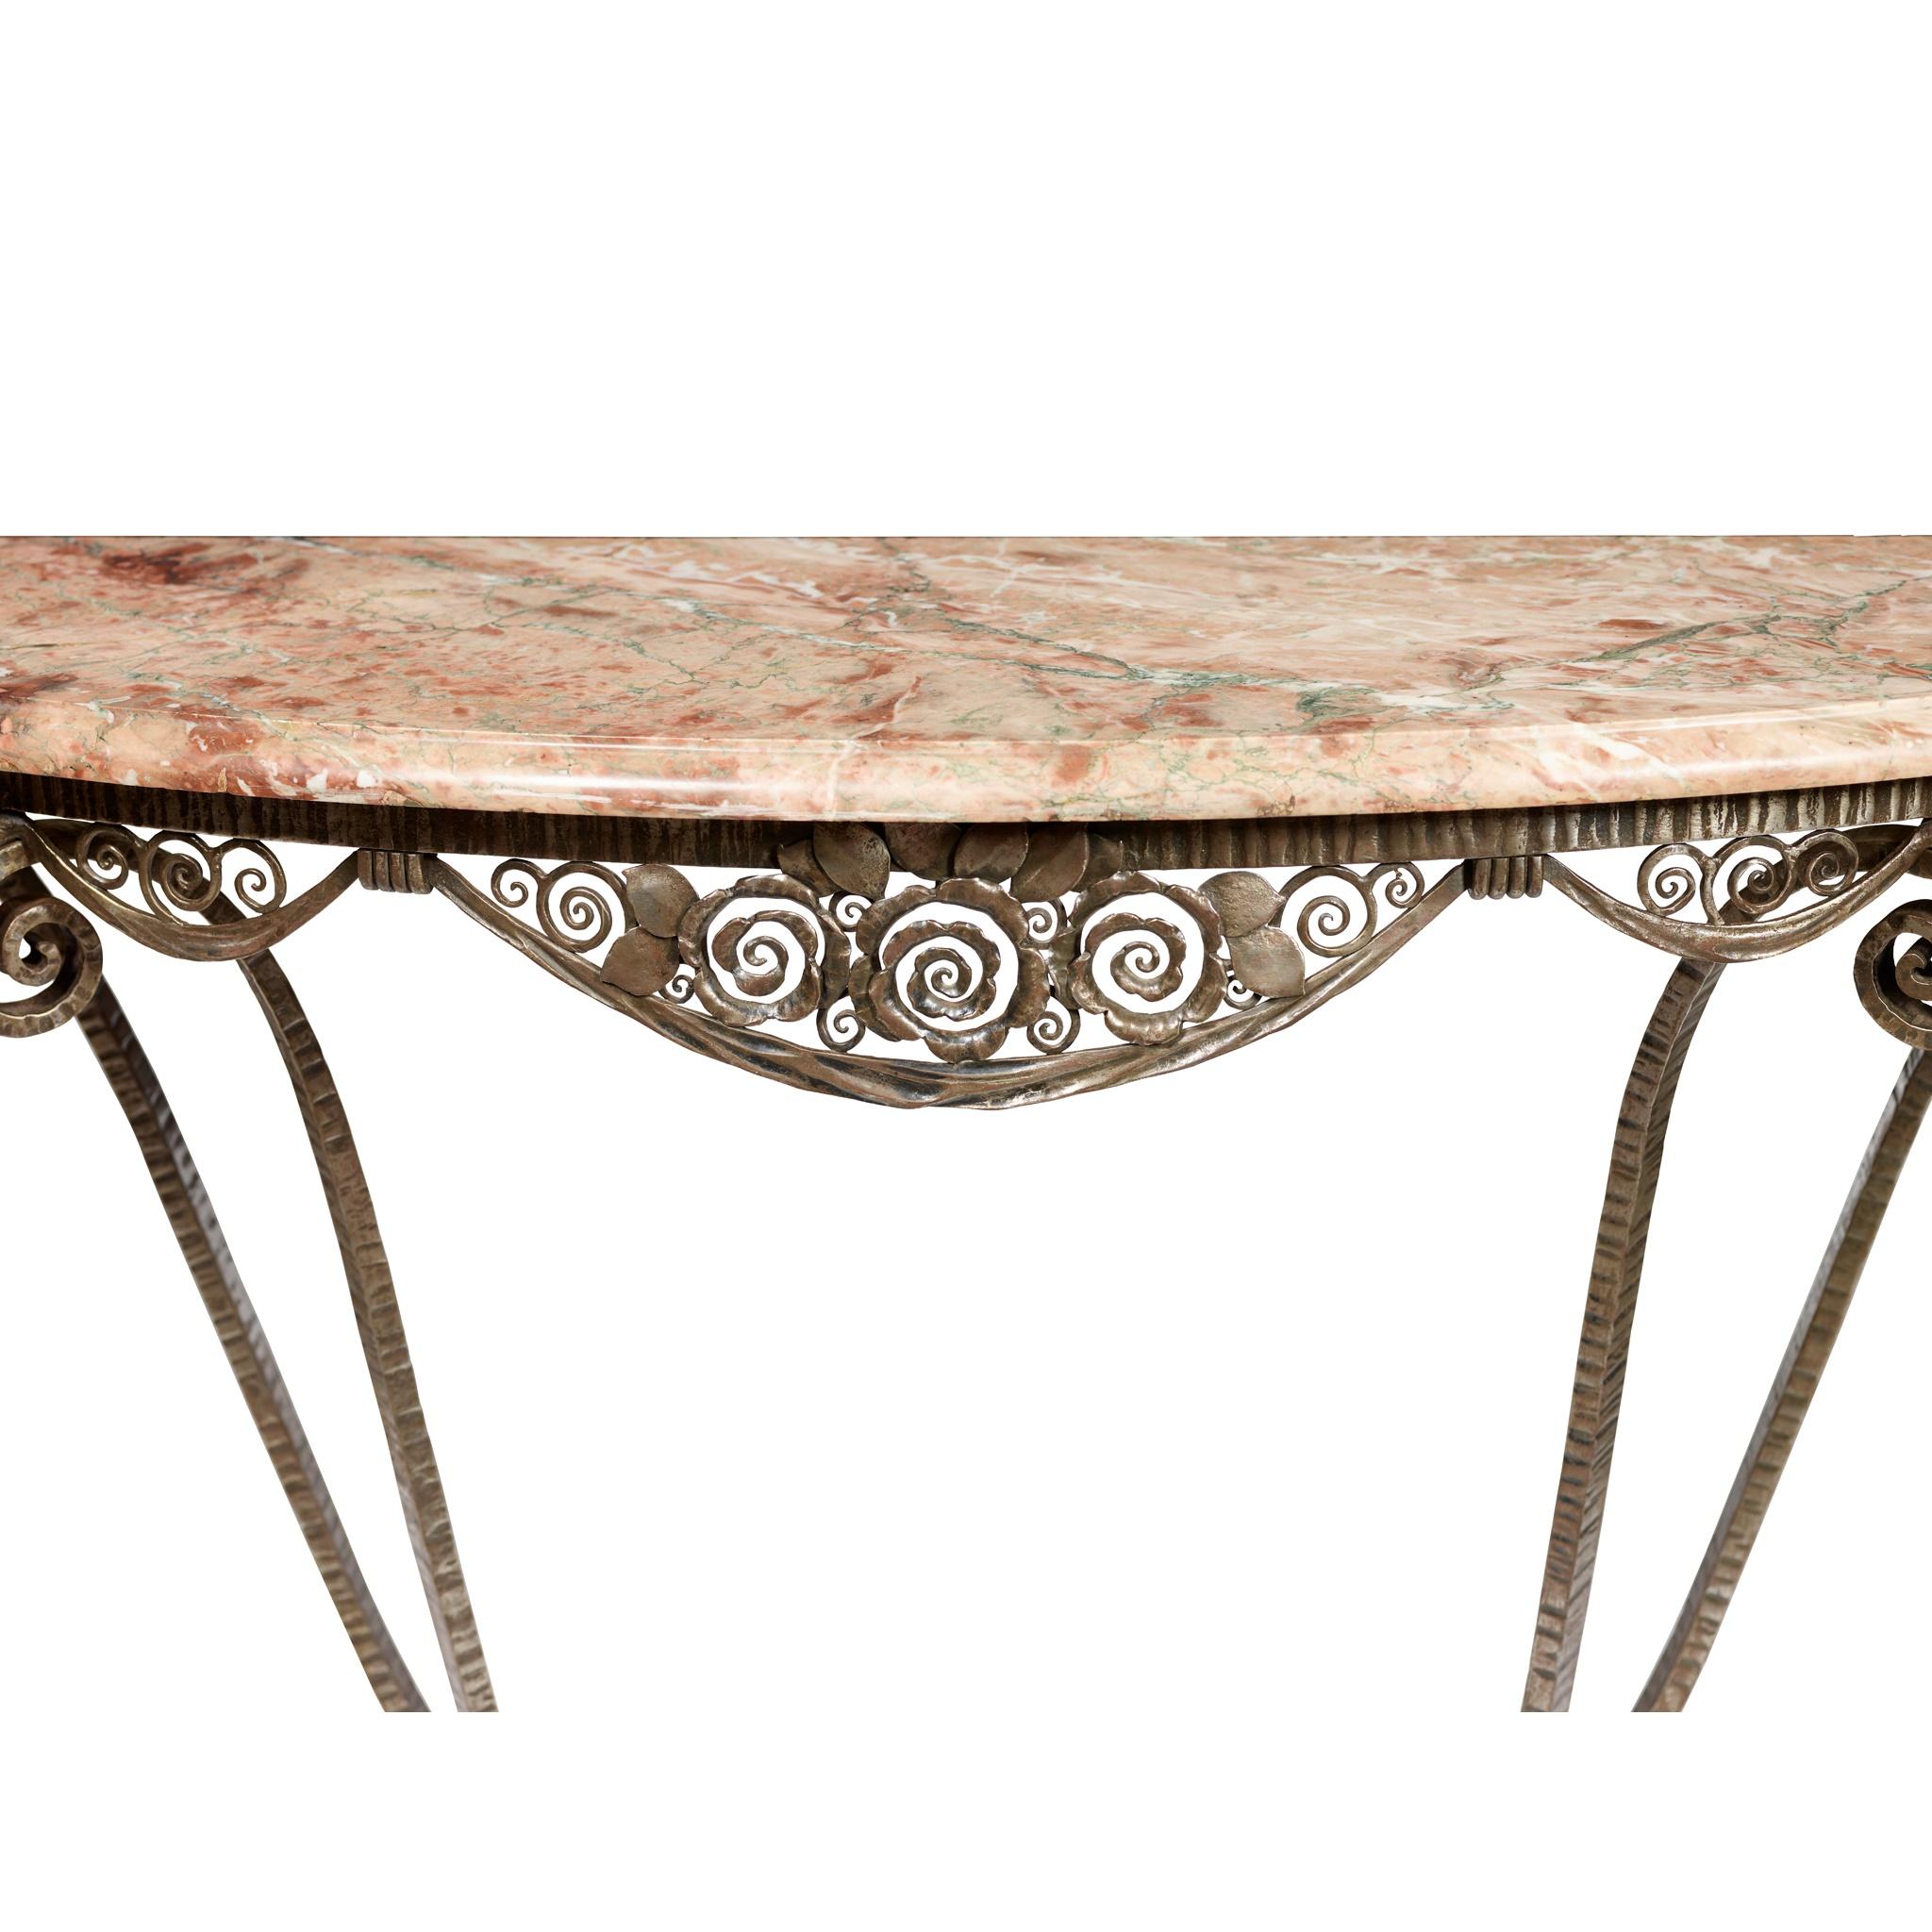 Edgar Brandt (1880-1960)
Table console 'Simplicité', circa 1925
Acier forgé, marbre
Mesures : 150.5cm de large, 87.5cm de haut, 45.5cm de profondeur.